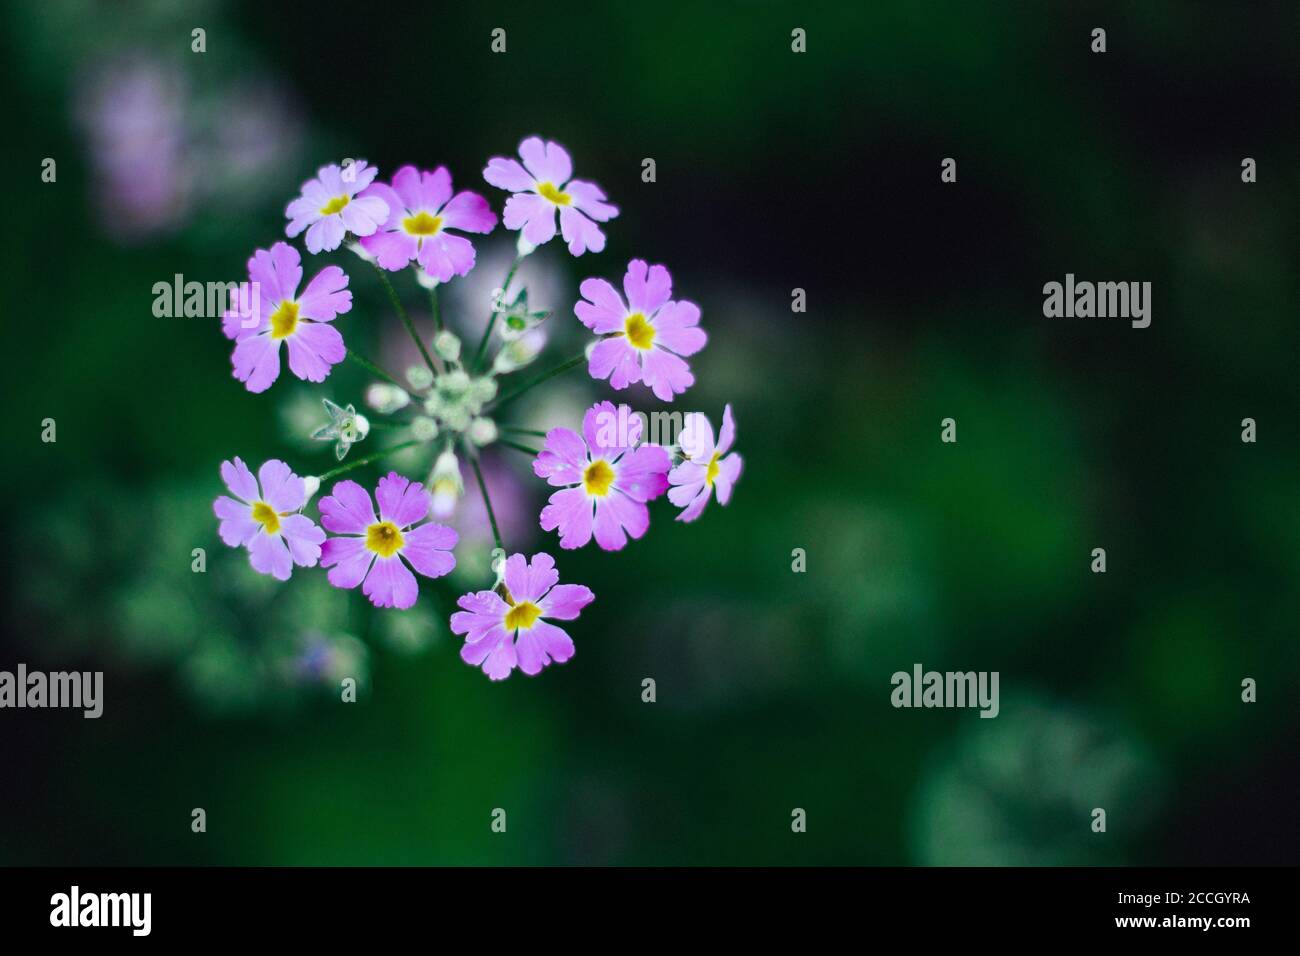 Schöne lila Blume auf grünem Blatt Hintergrund Stockfoto